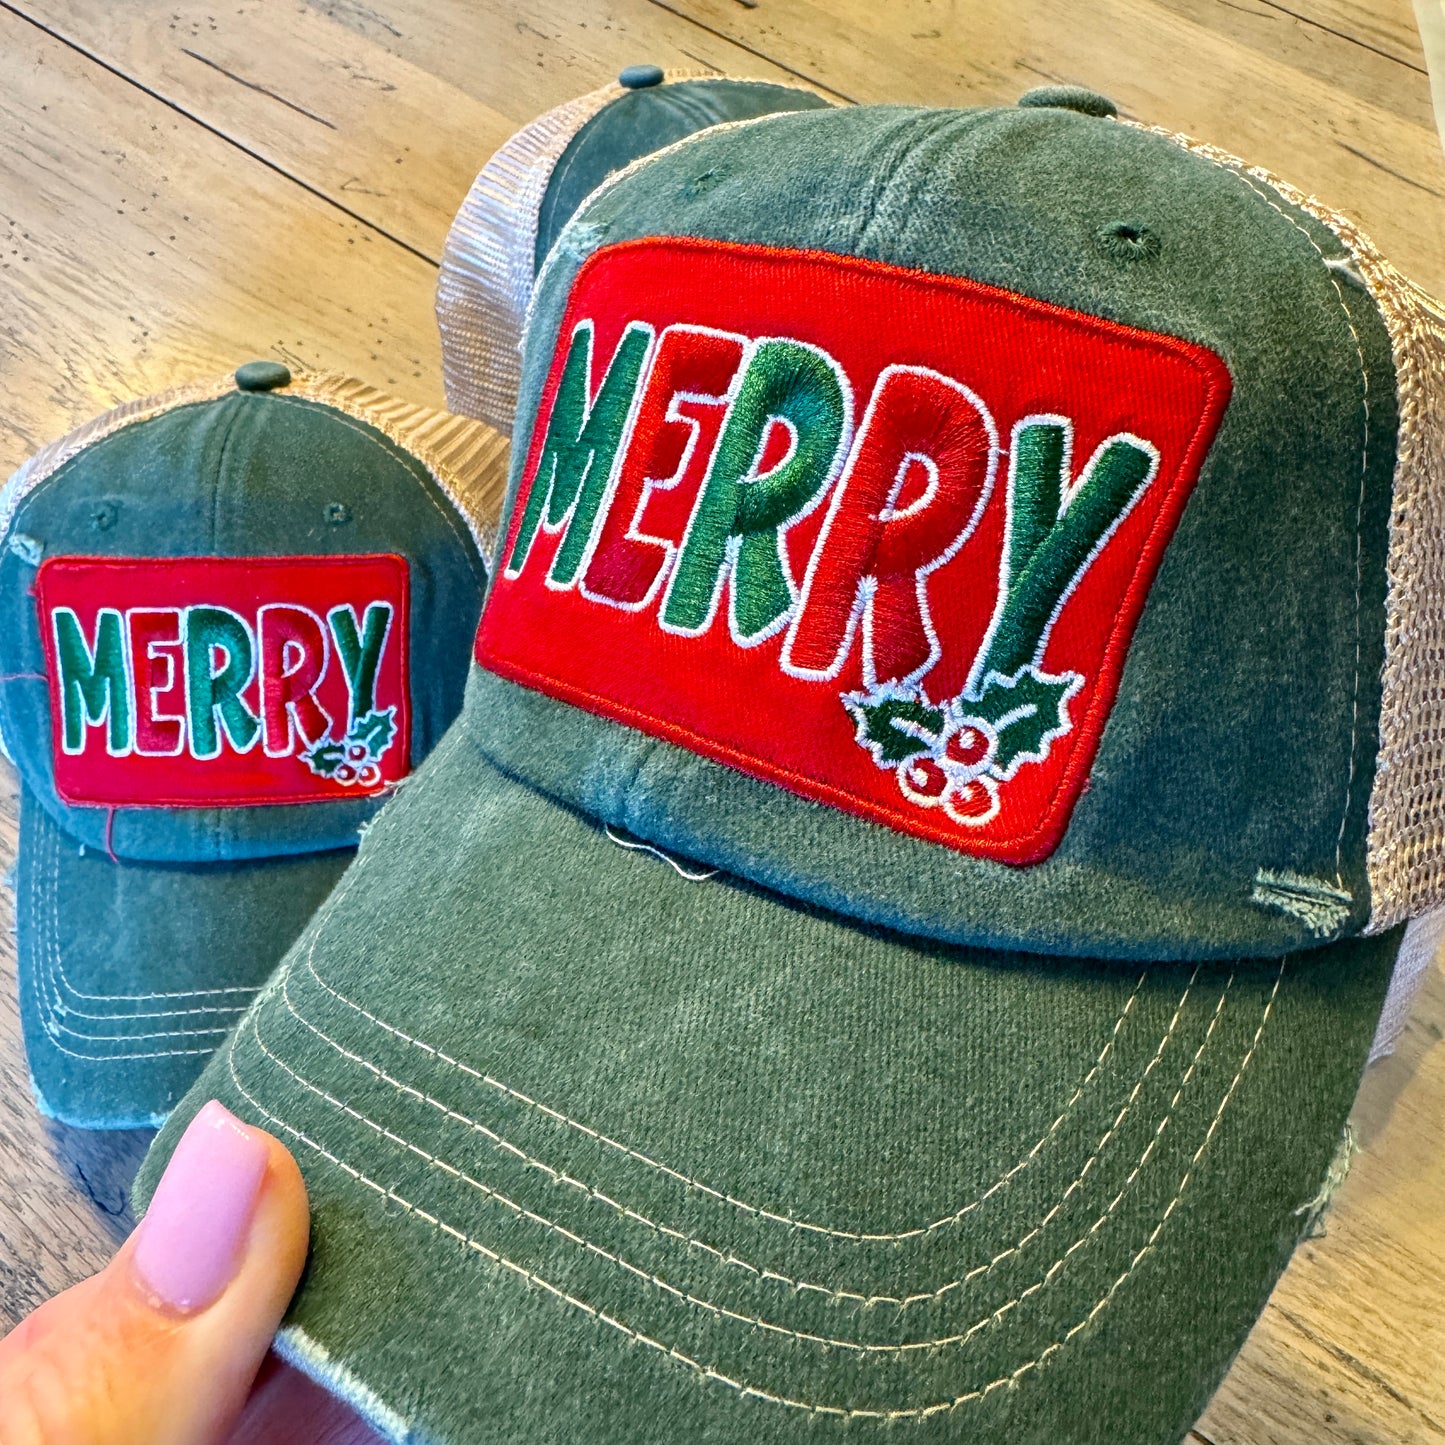 Vintage Merry hat